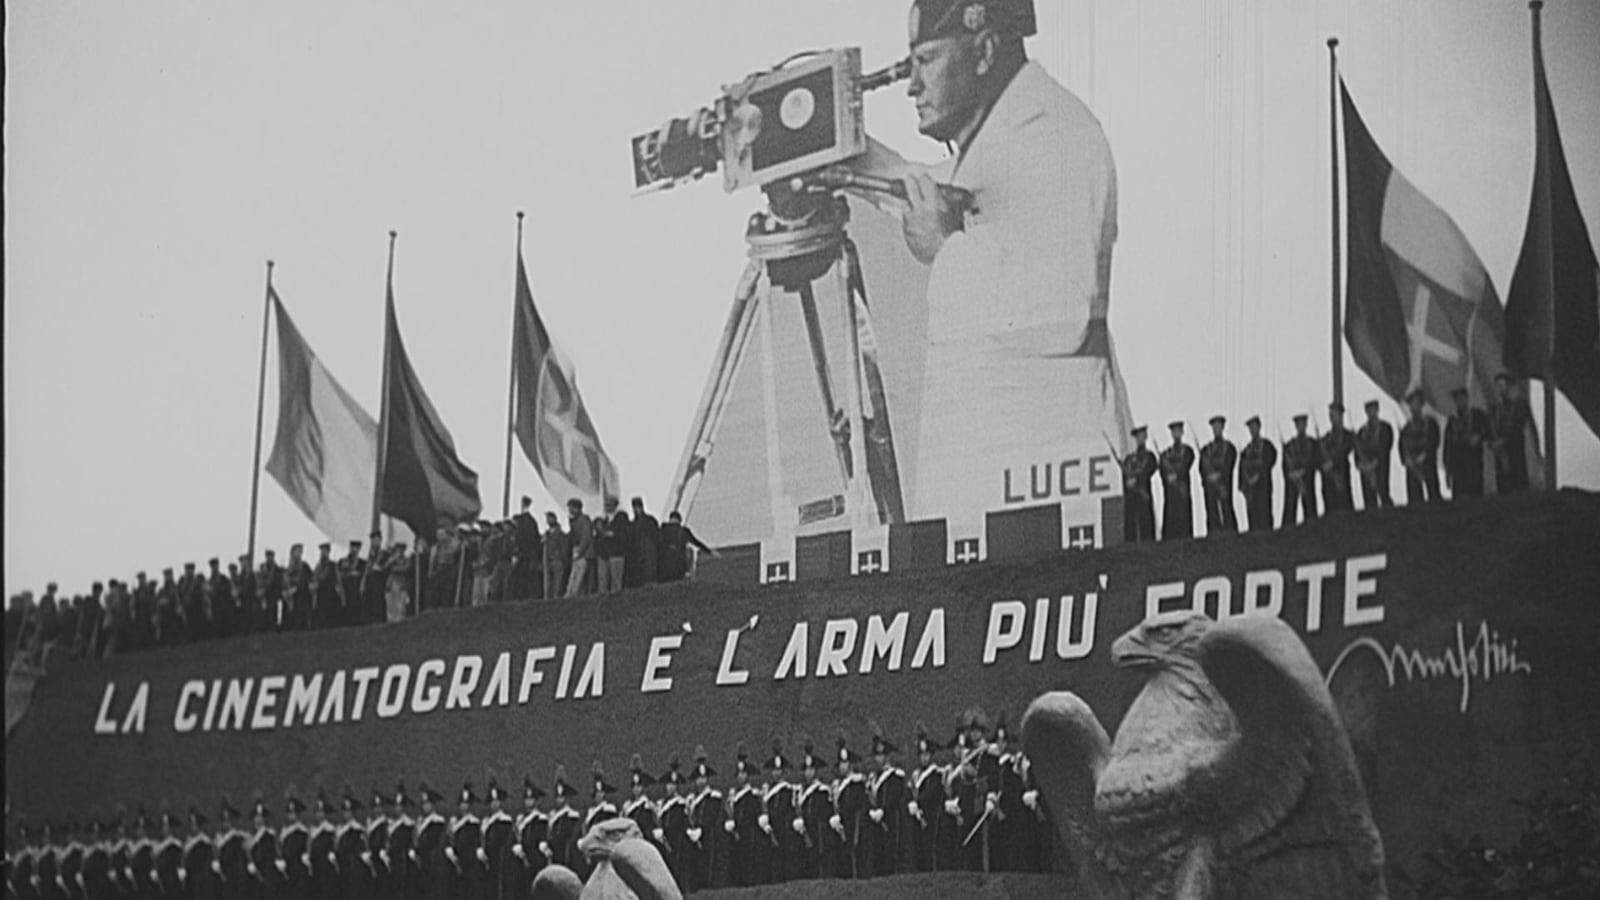 Cinecitta a été inauguré au printemps 1937 à Rome. Mussolini fait du cinéma italien son arme de propagande.